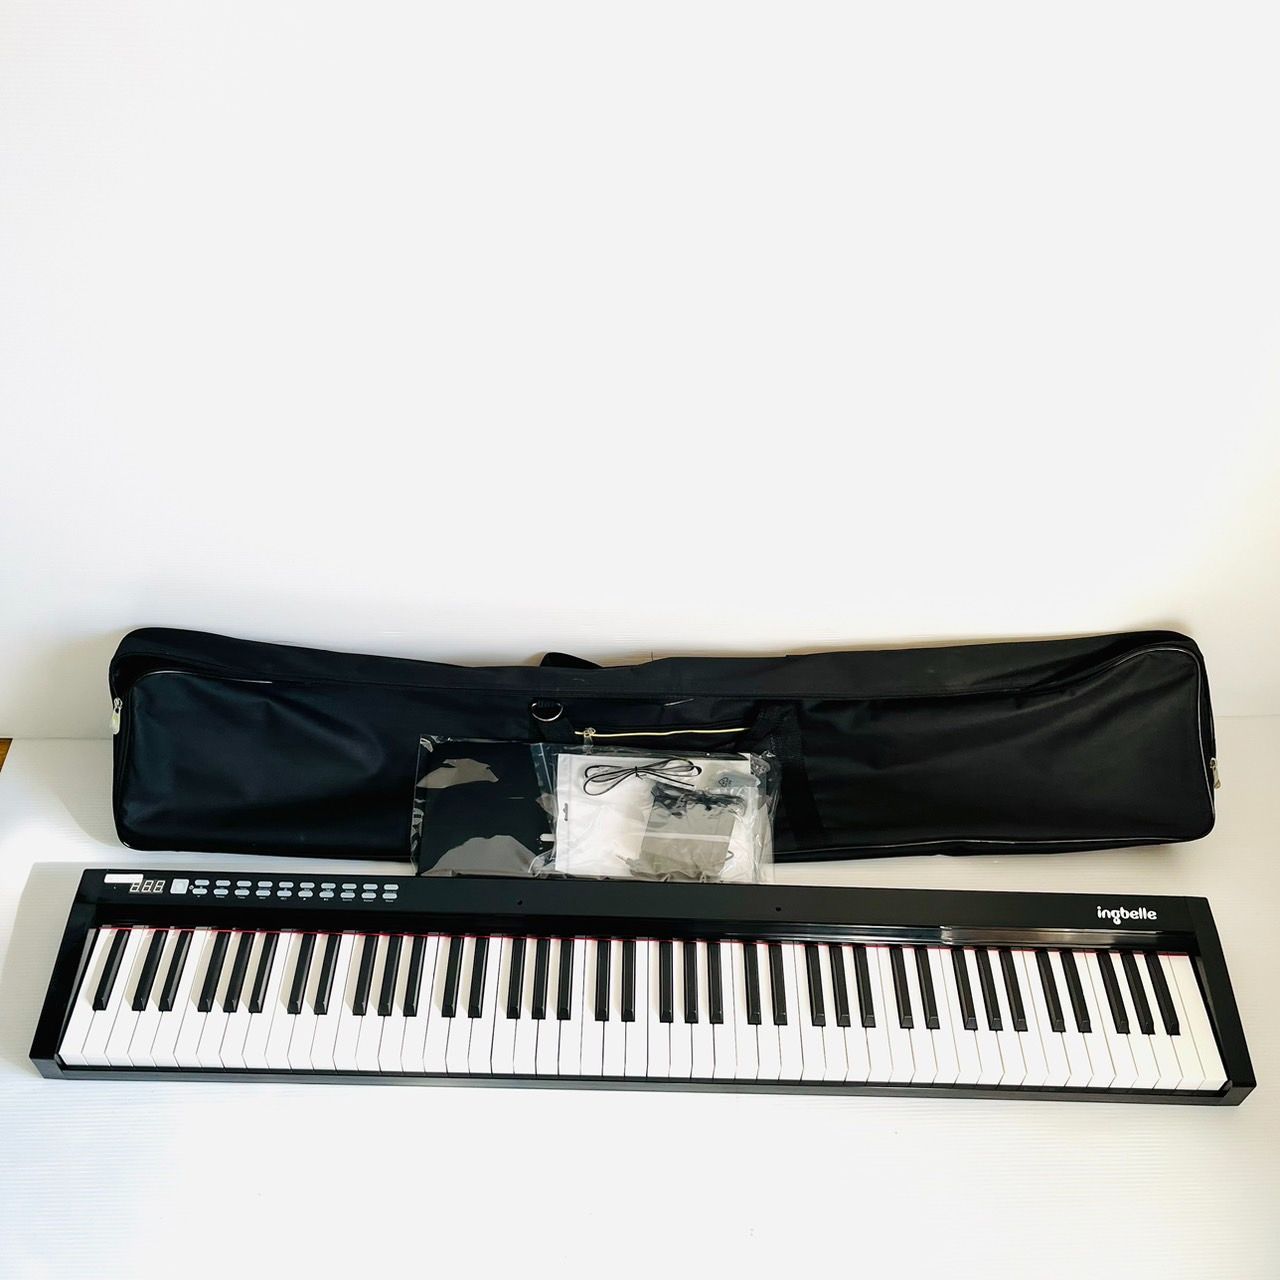 ingbelle 88鍵盤 ポータブル電子ピアノ MIDIキーボード PH88C - 鍵盤楽器